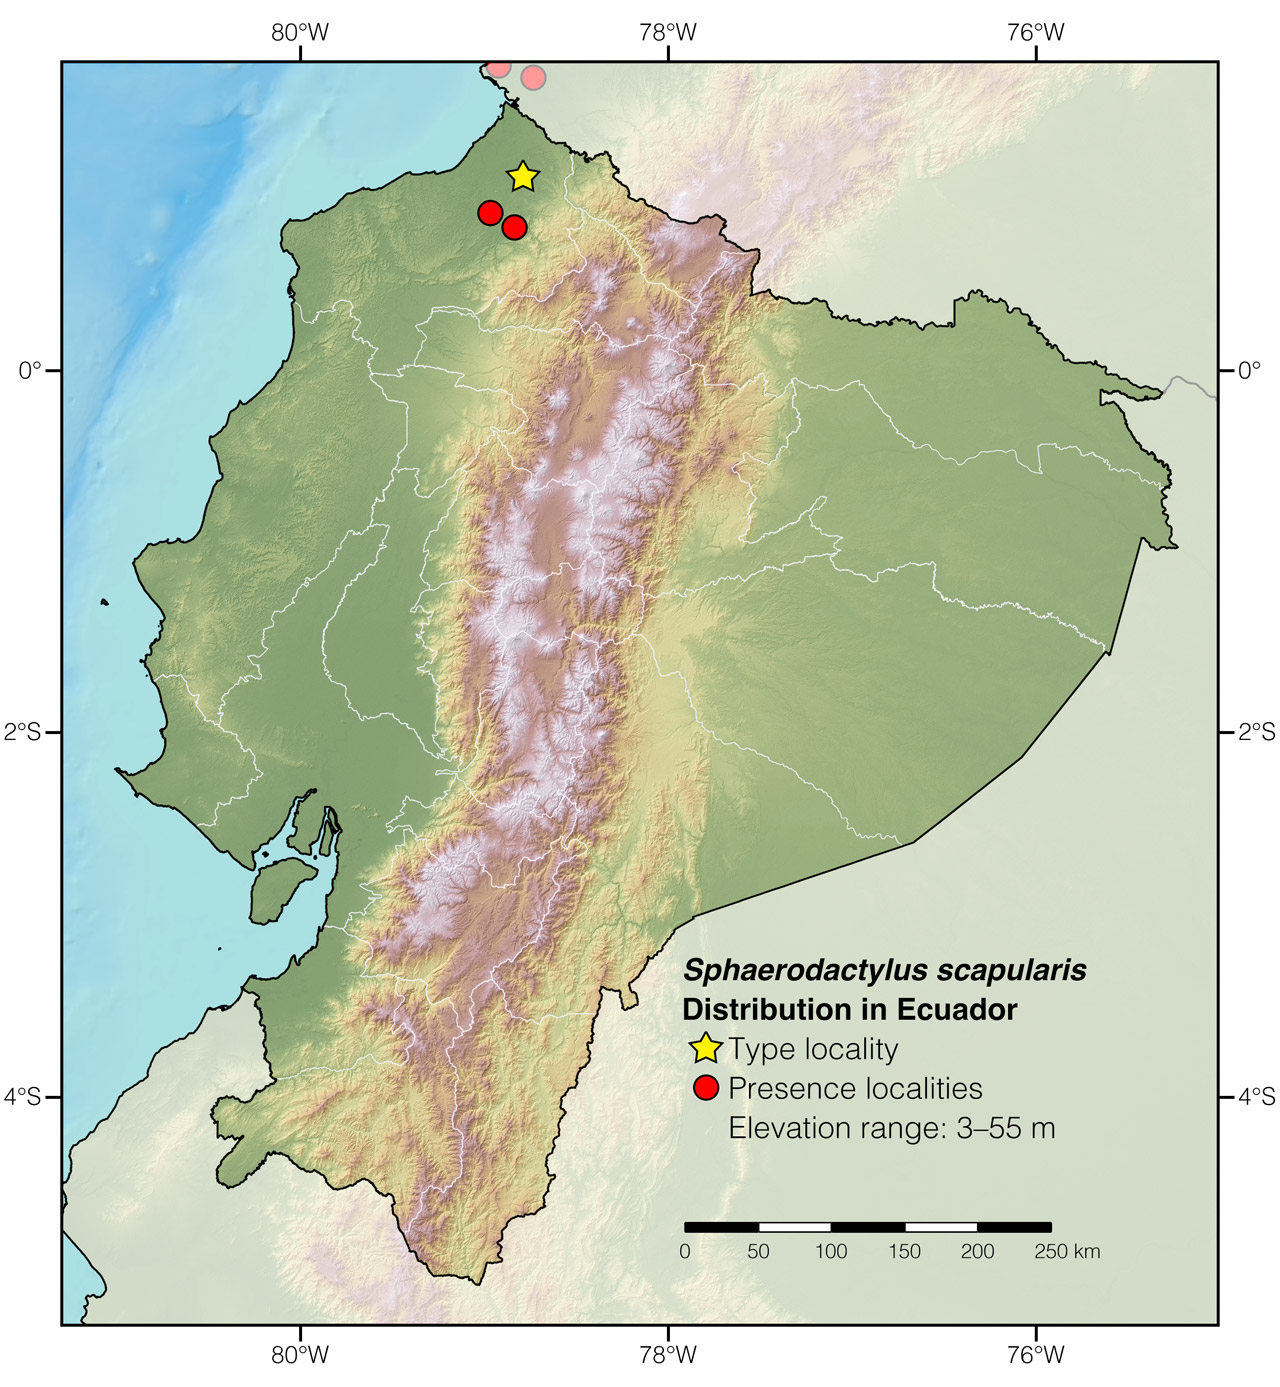 Distribution of Sphaerodactylus scapularis in Ecuador